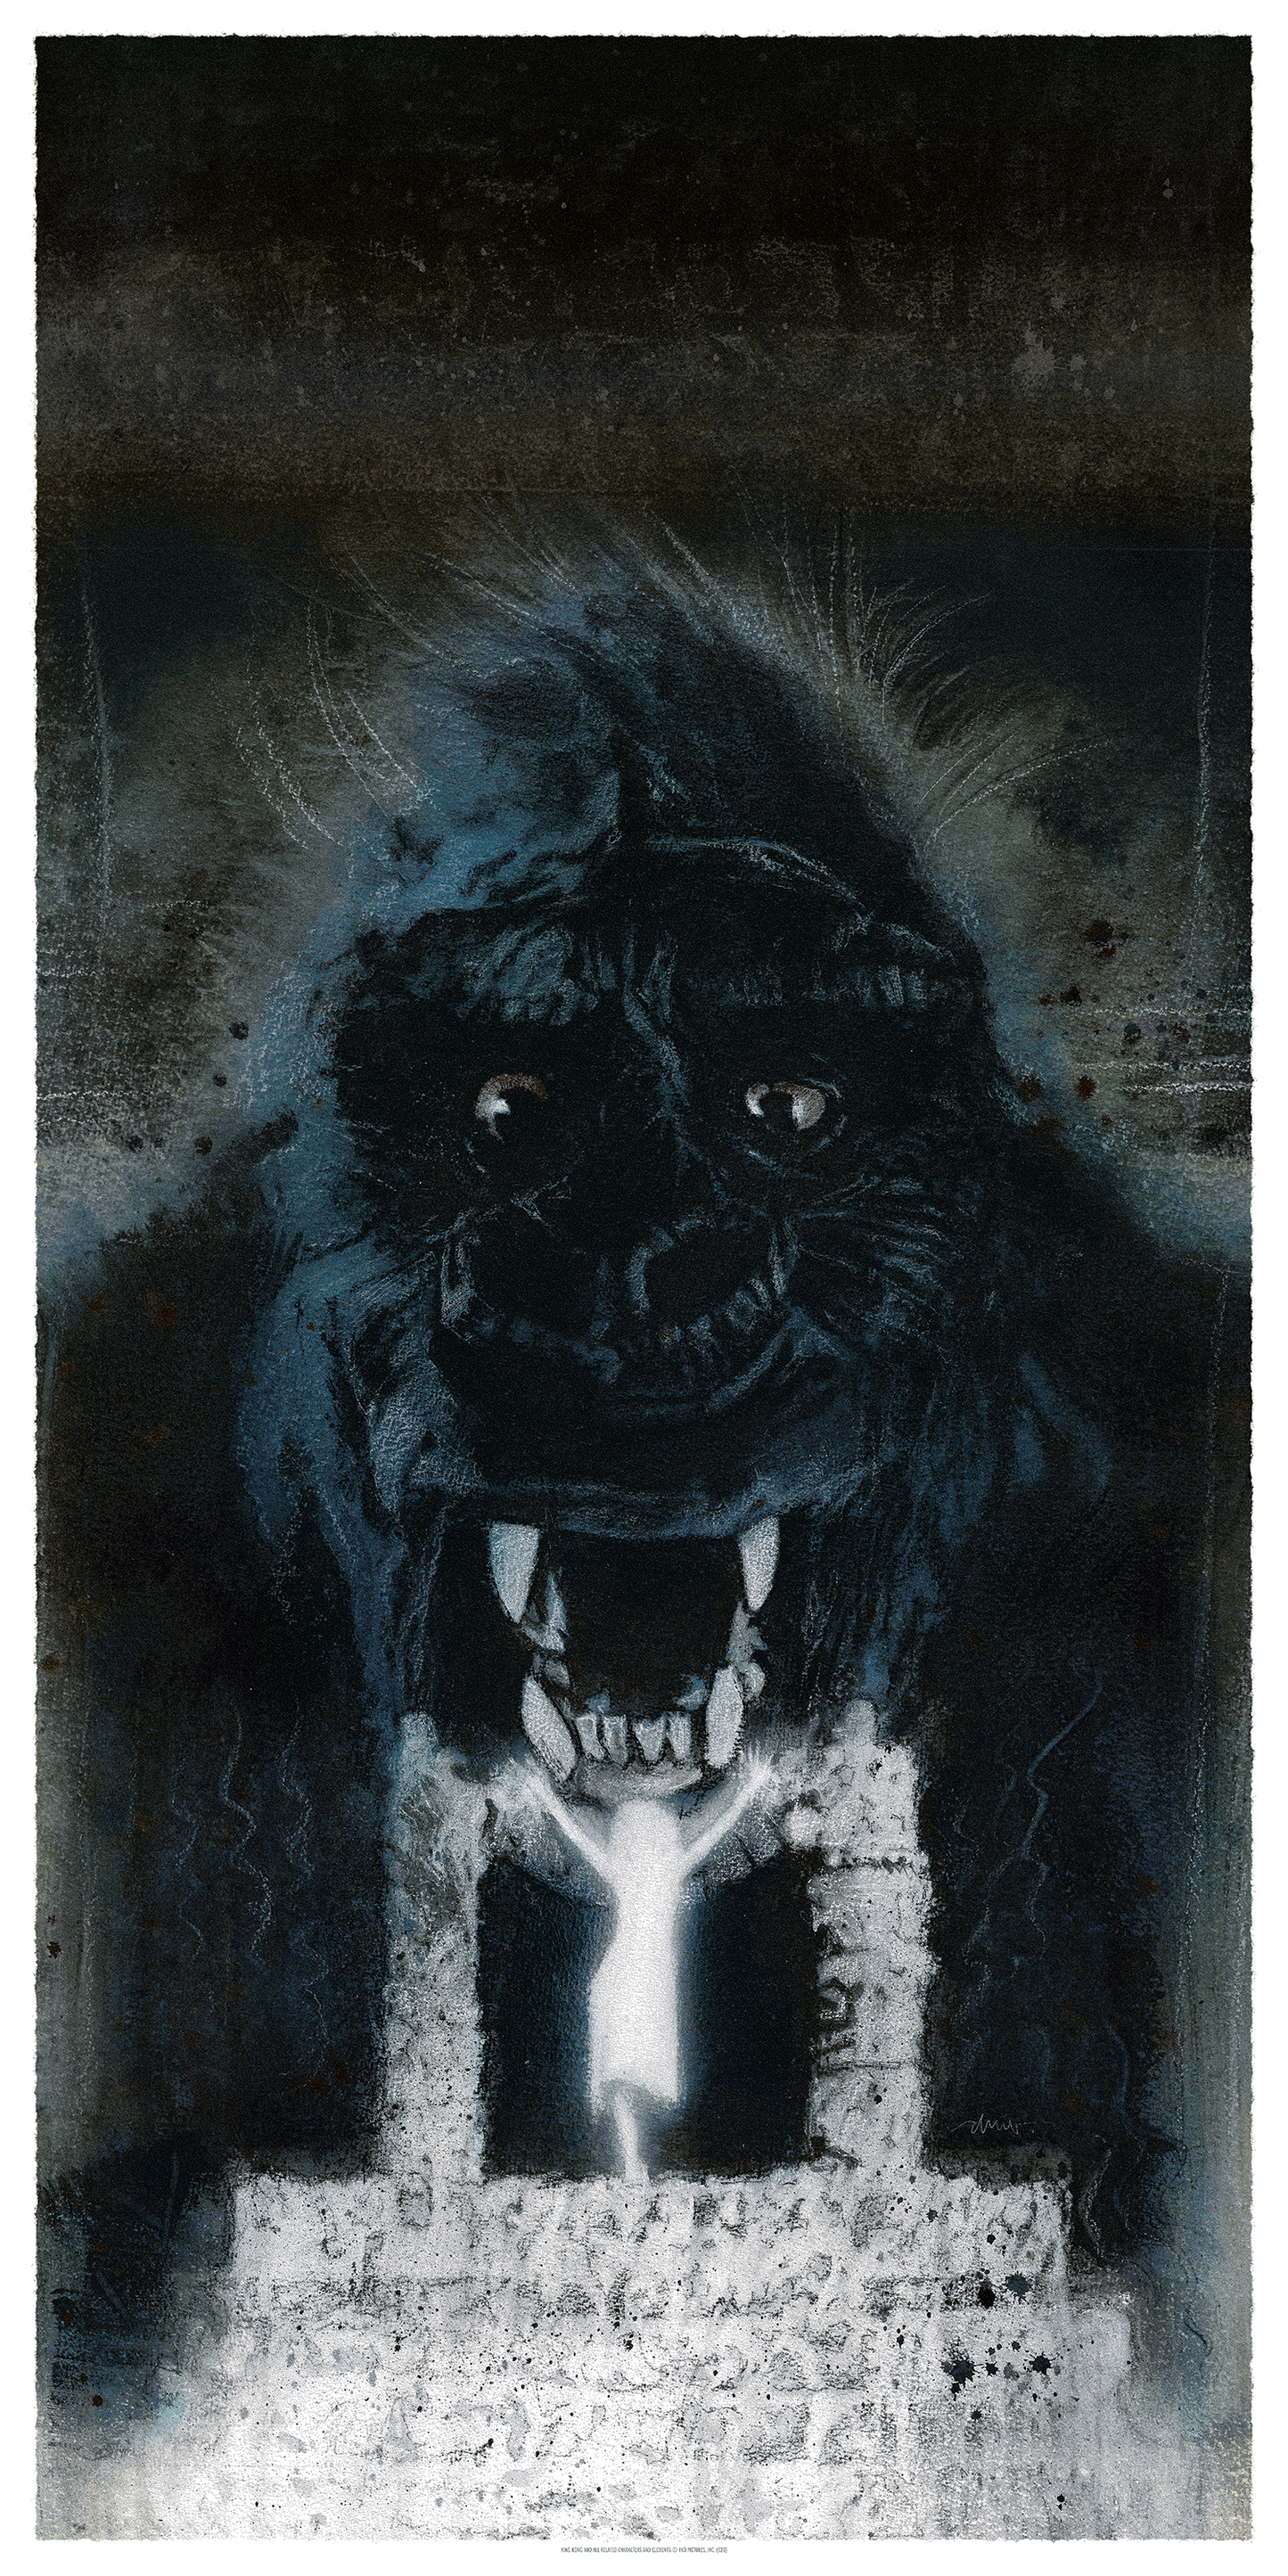 Drew Struzan "King Kong" Art Print